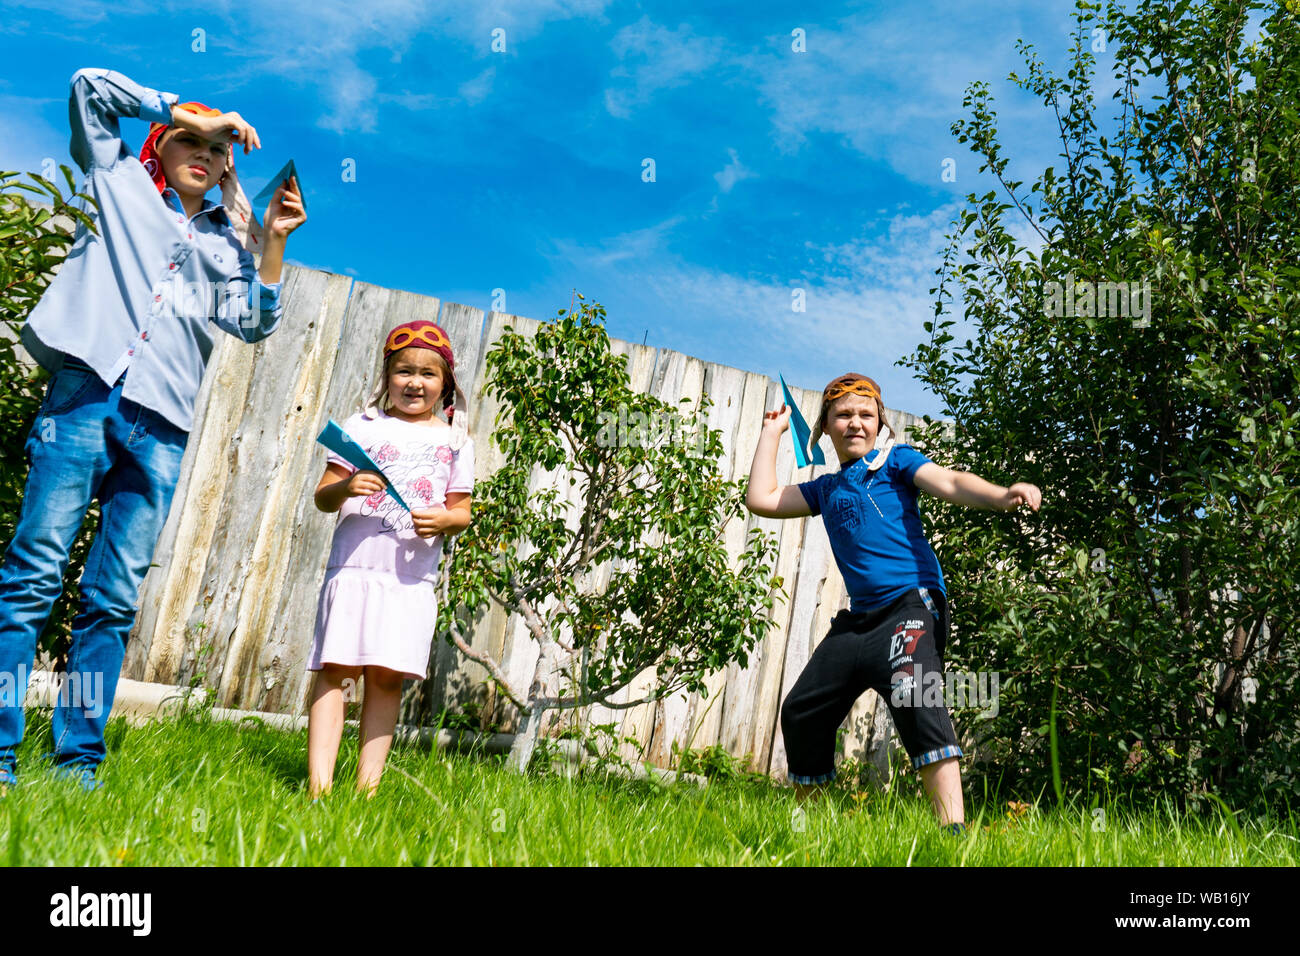 La regione di Celjabinsk, Russia - Agosto 2019.I bambini di differenti età giocare gli aeroplani di carta insieme. Ragazzi e una ragazza di decollo in cielo con il piano della carta Foto Stock